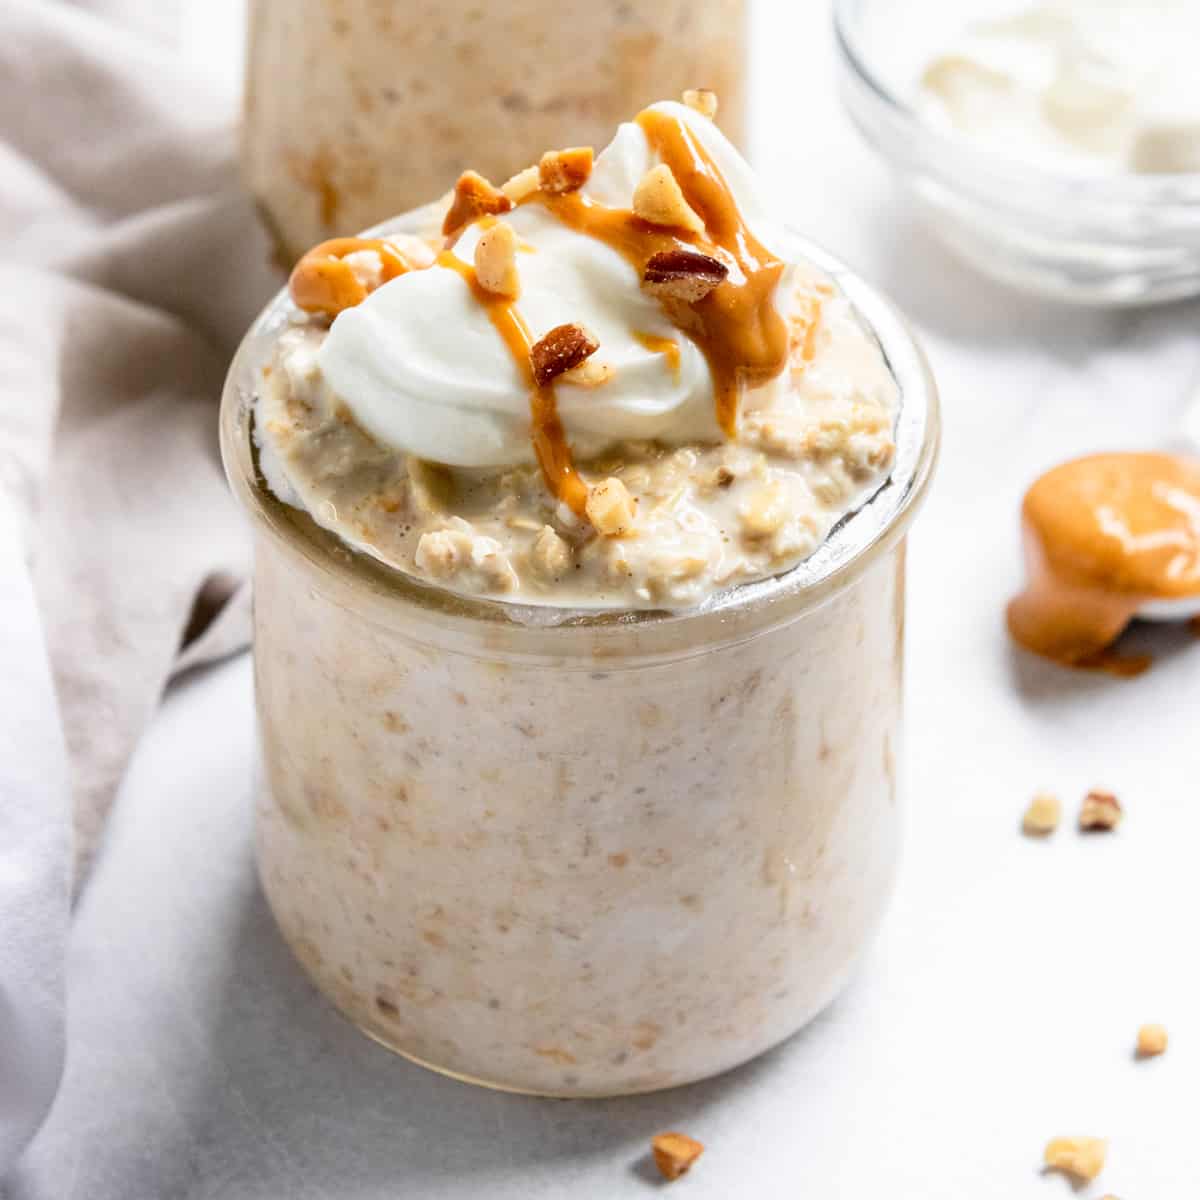 https://lemonsandzest.com/wp-content/uploads/2020/07/Peanut-Butter-Greek-Yogurt-Overnight-Oats-8.jpg